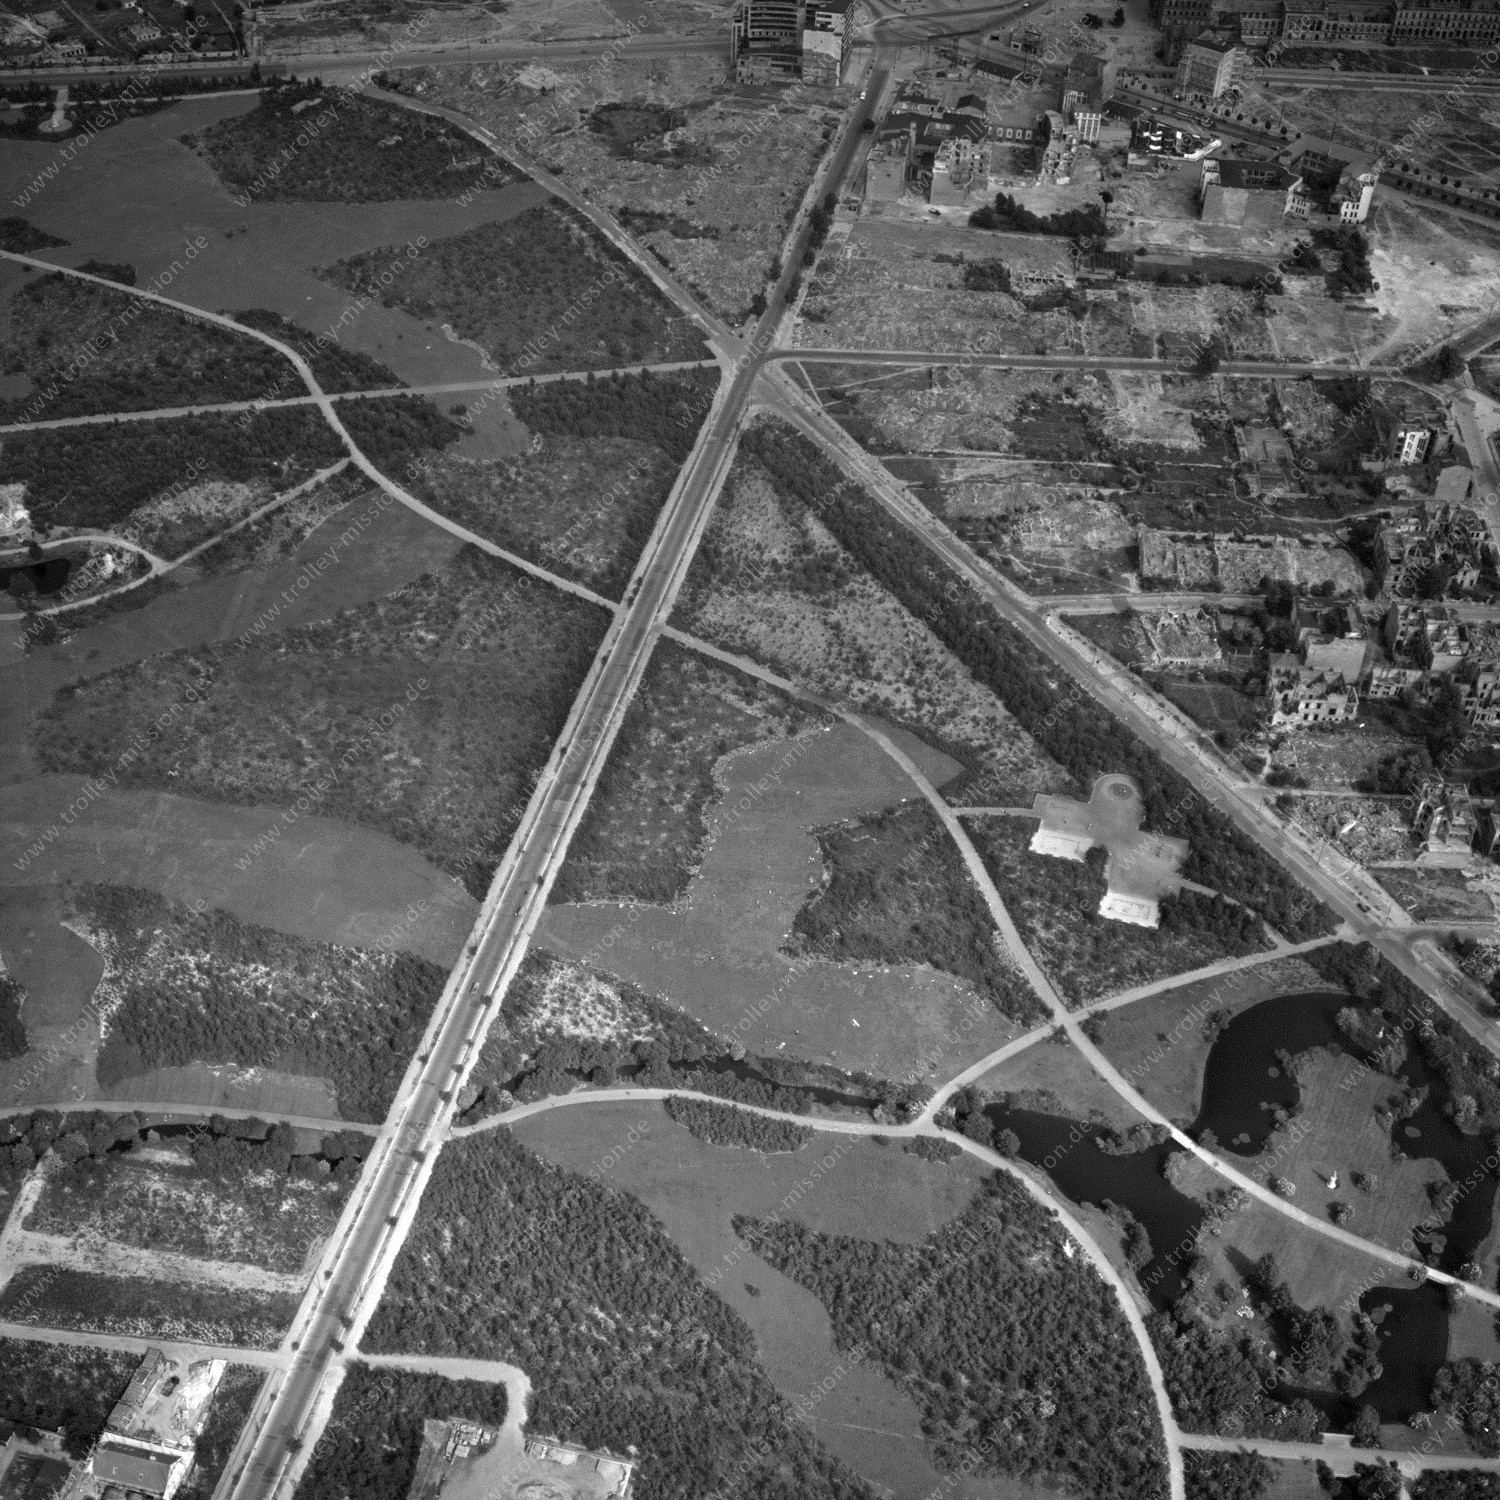 Alte Fotos und Luftbilder von Berlin - Luftbildaufnahme Nr. 04 - Historische Luftaufnahmen von West-Berlin aus dem Jahr 1954 - Flugstrecke Xray